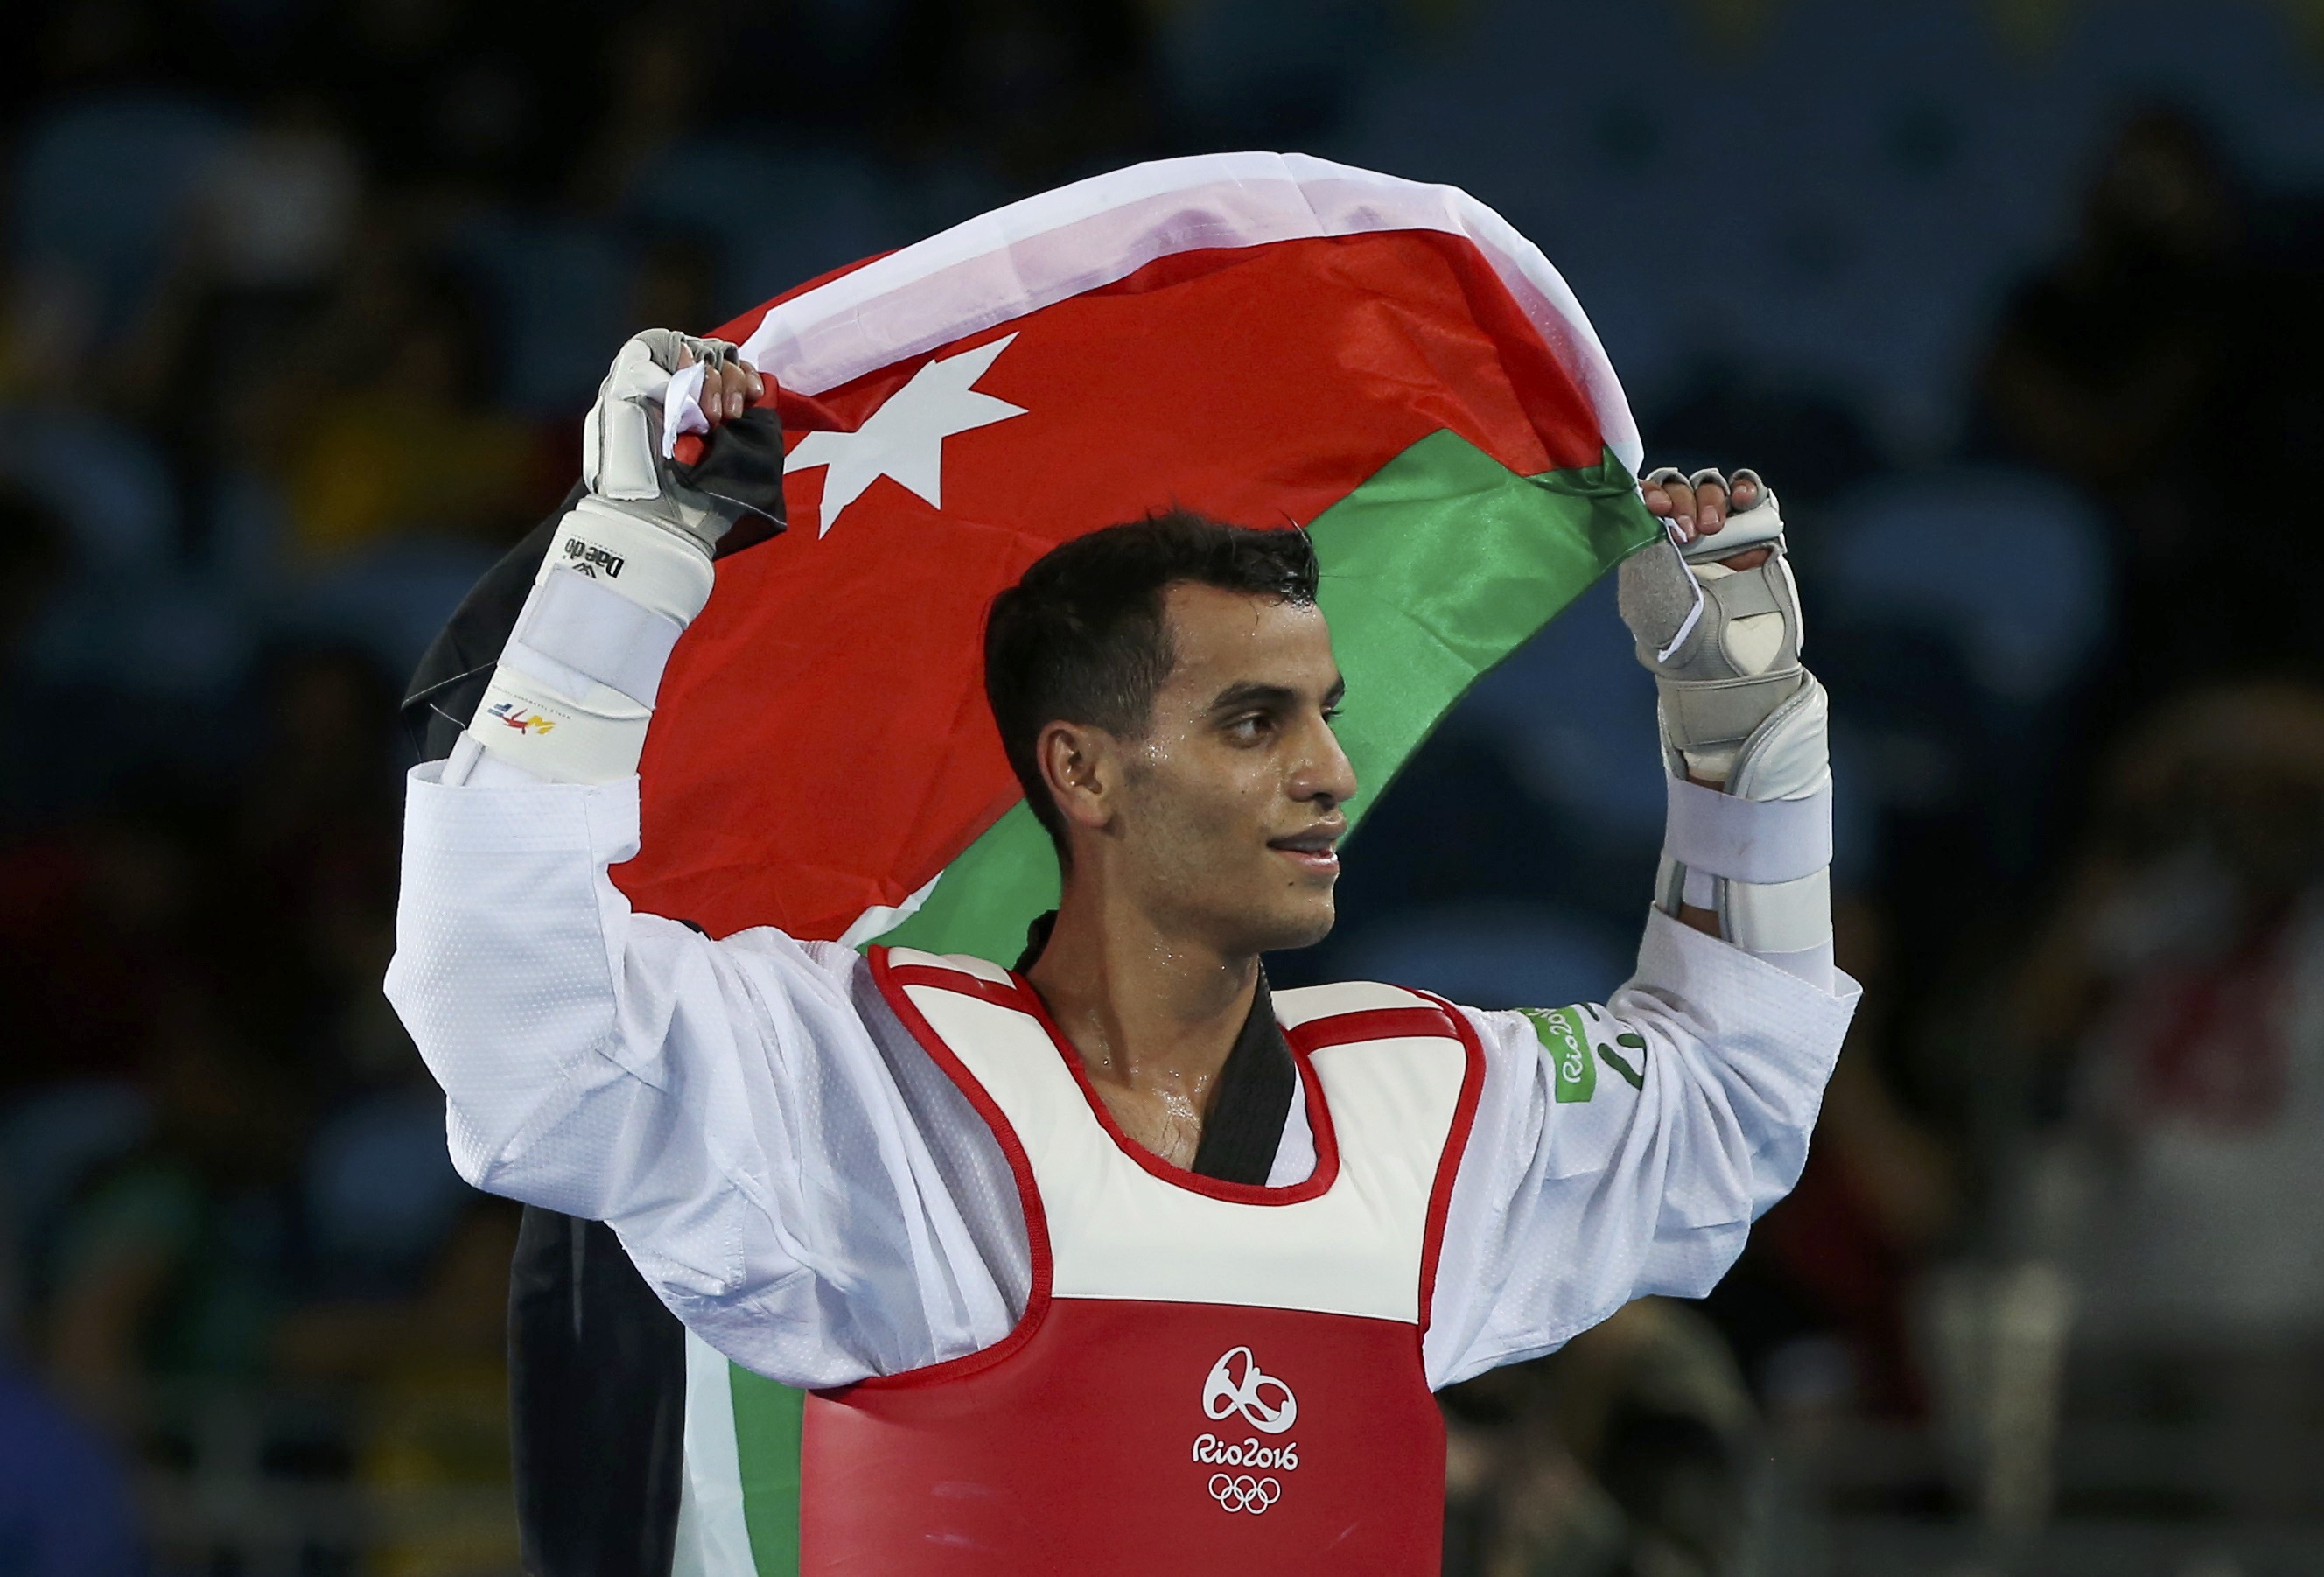 مفاجأة صادمة.. اعتزال البطل الأولمبي الأردني أحمد أبوغوش وغموض يغلف القرار